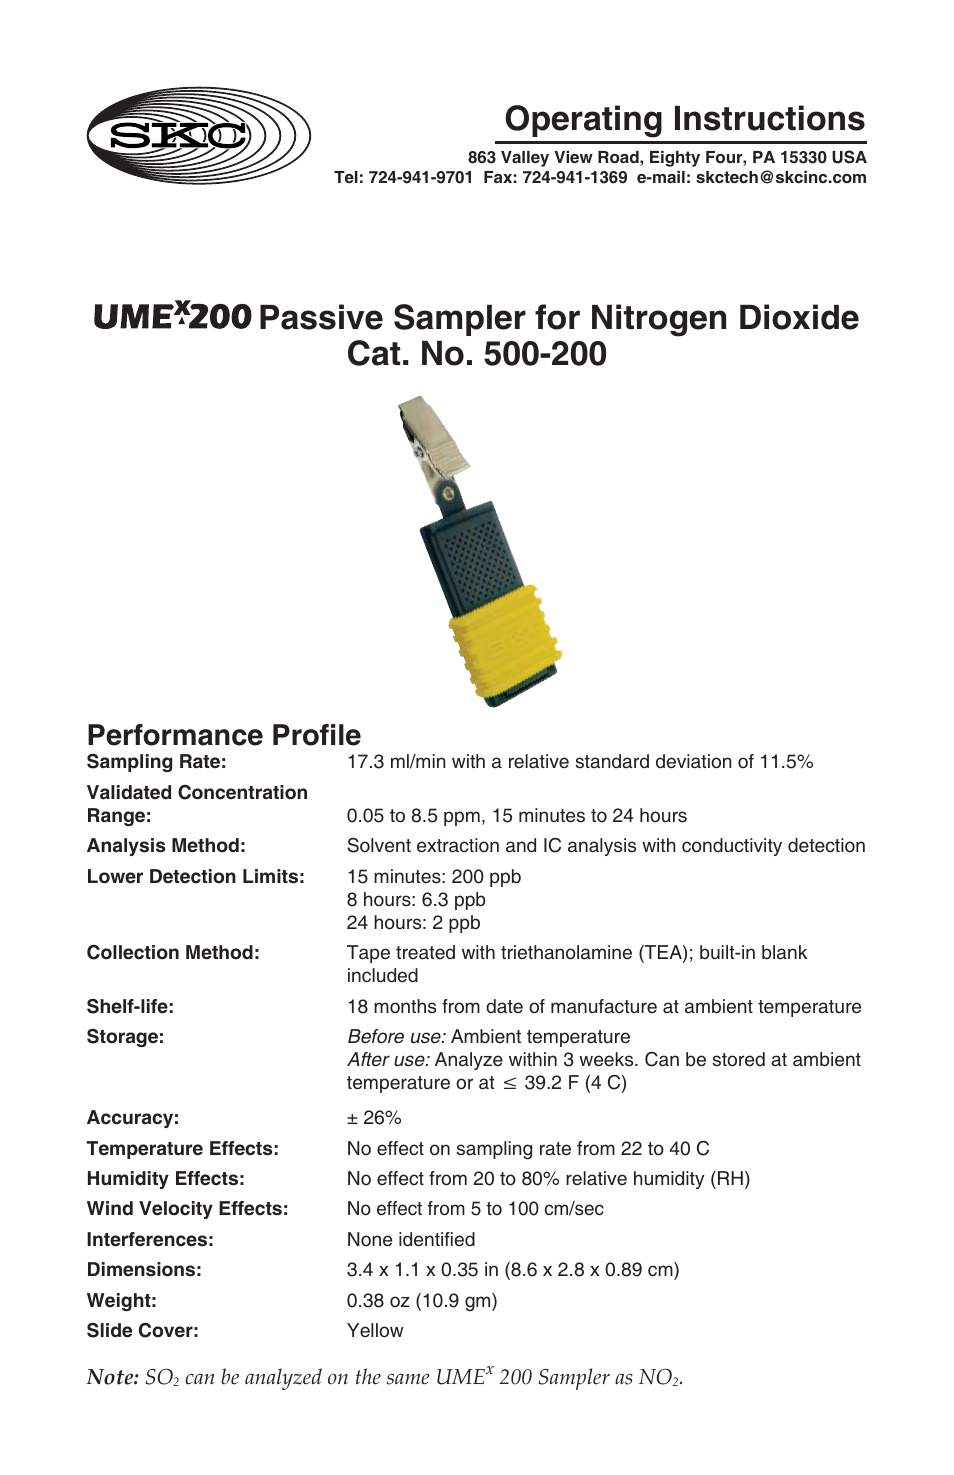 500-200 UMEx 200 Passive Sampler for Nitrogen Dioxide